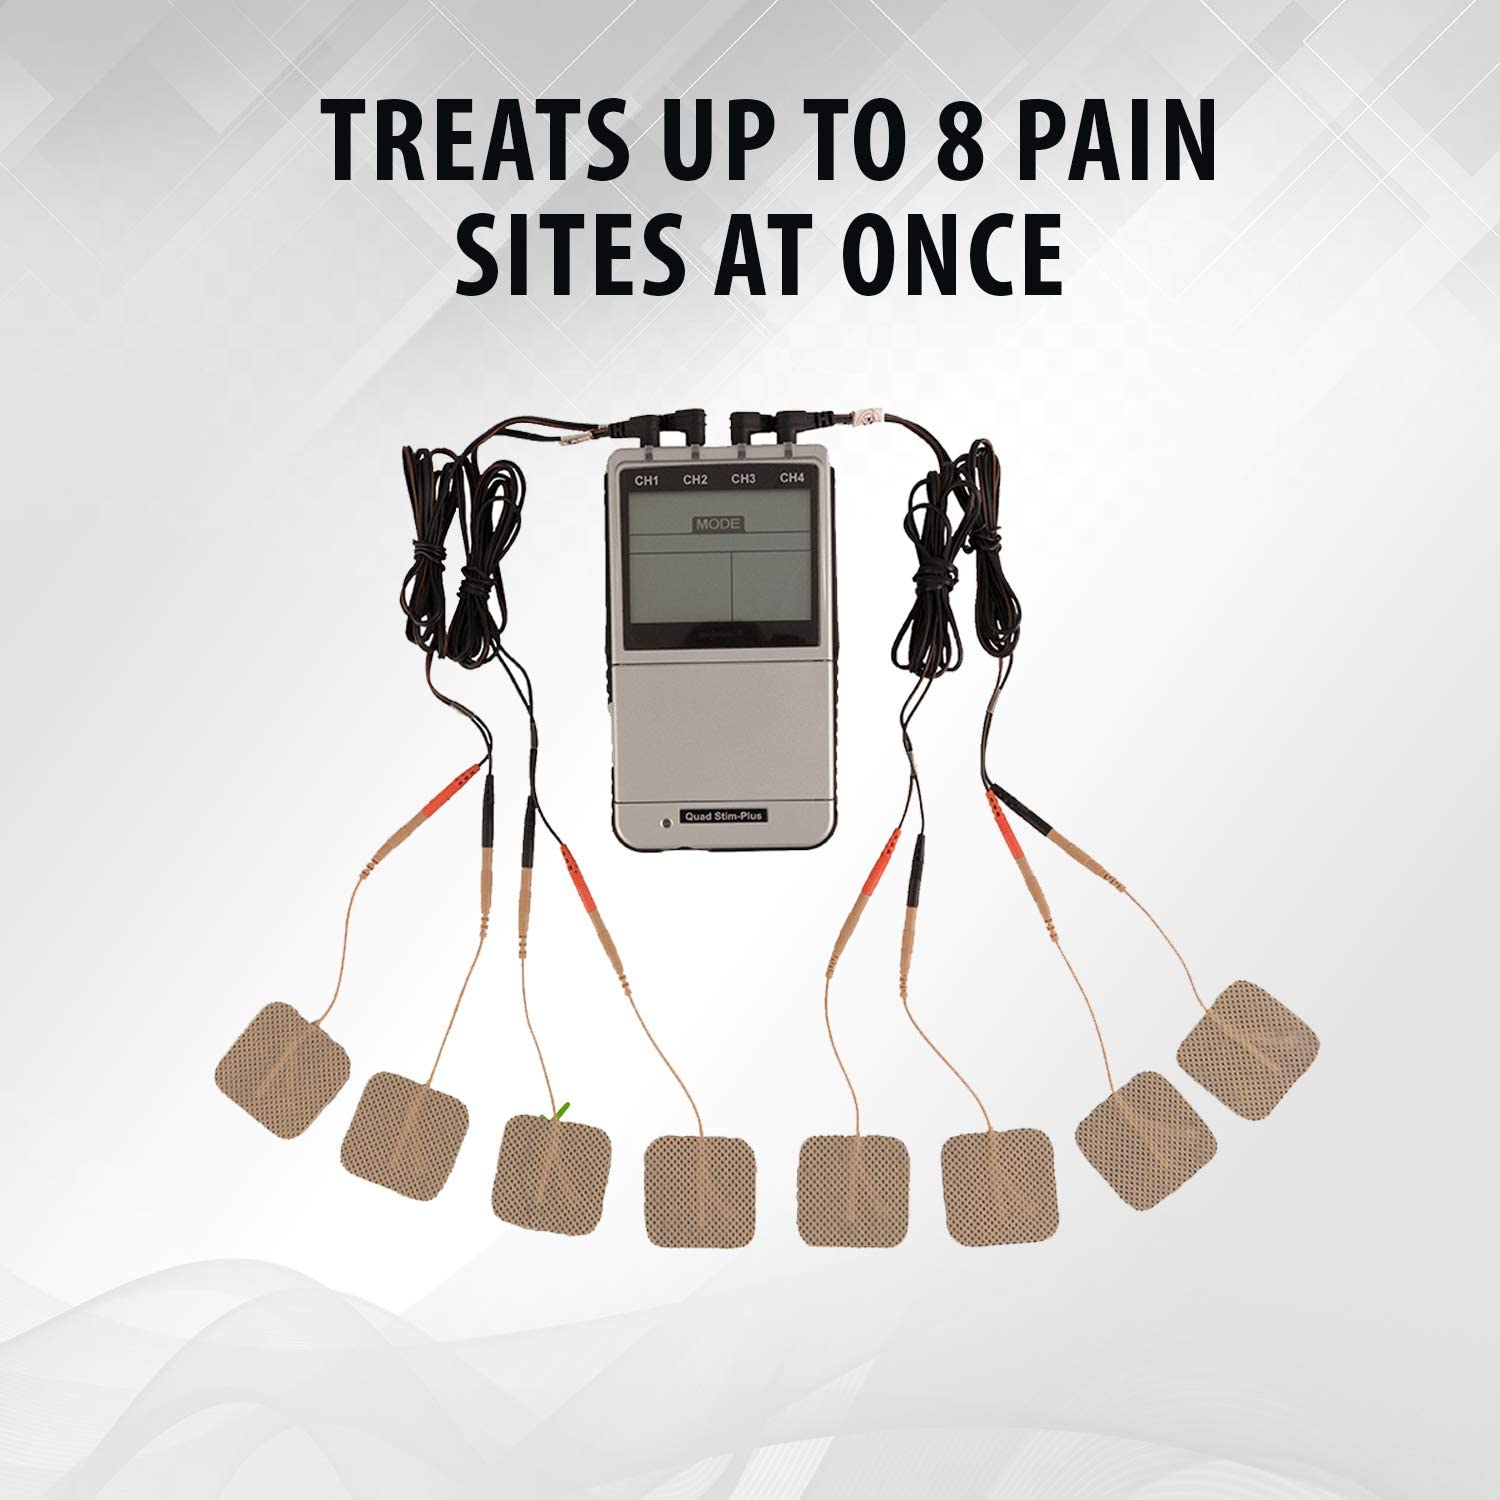 Quad Stim Plus Electro Muscle Stimulator - TENS / EMS Combo Unit by PMT